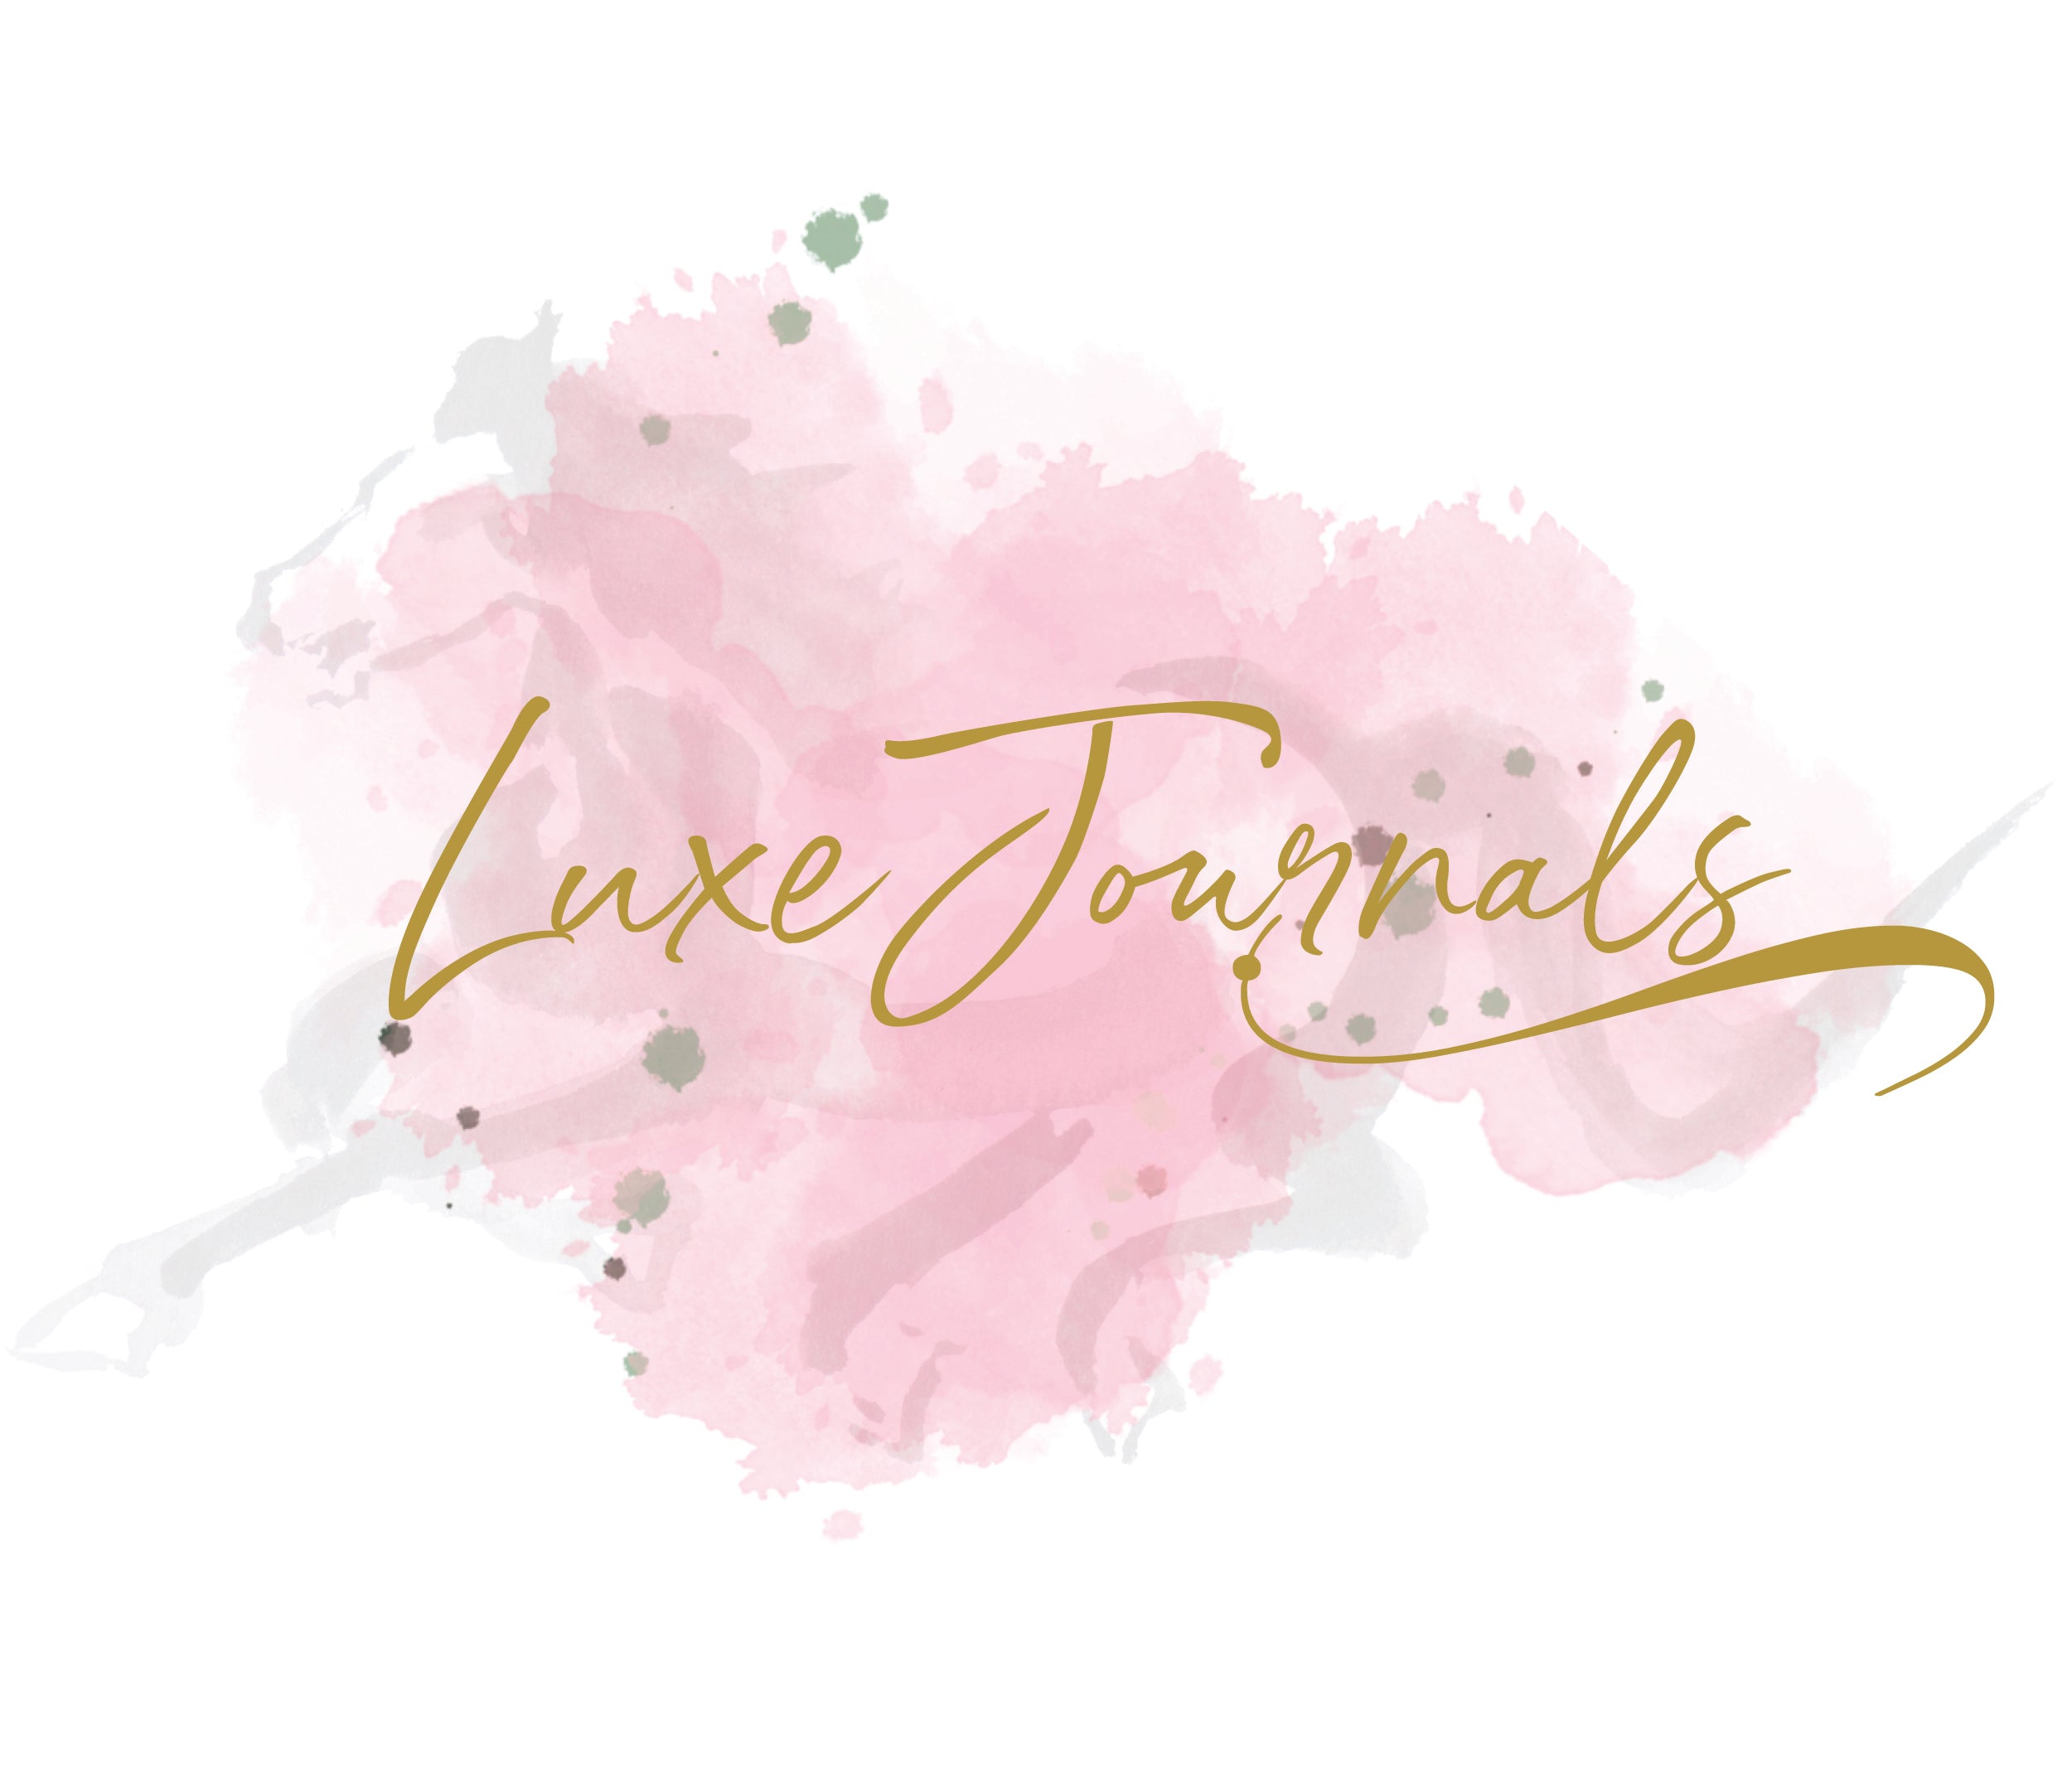 Luxe Journals